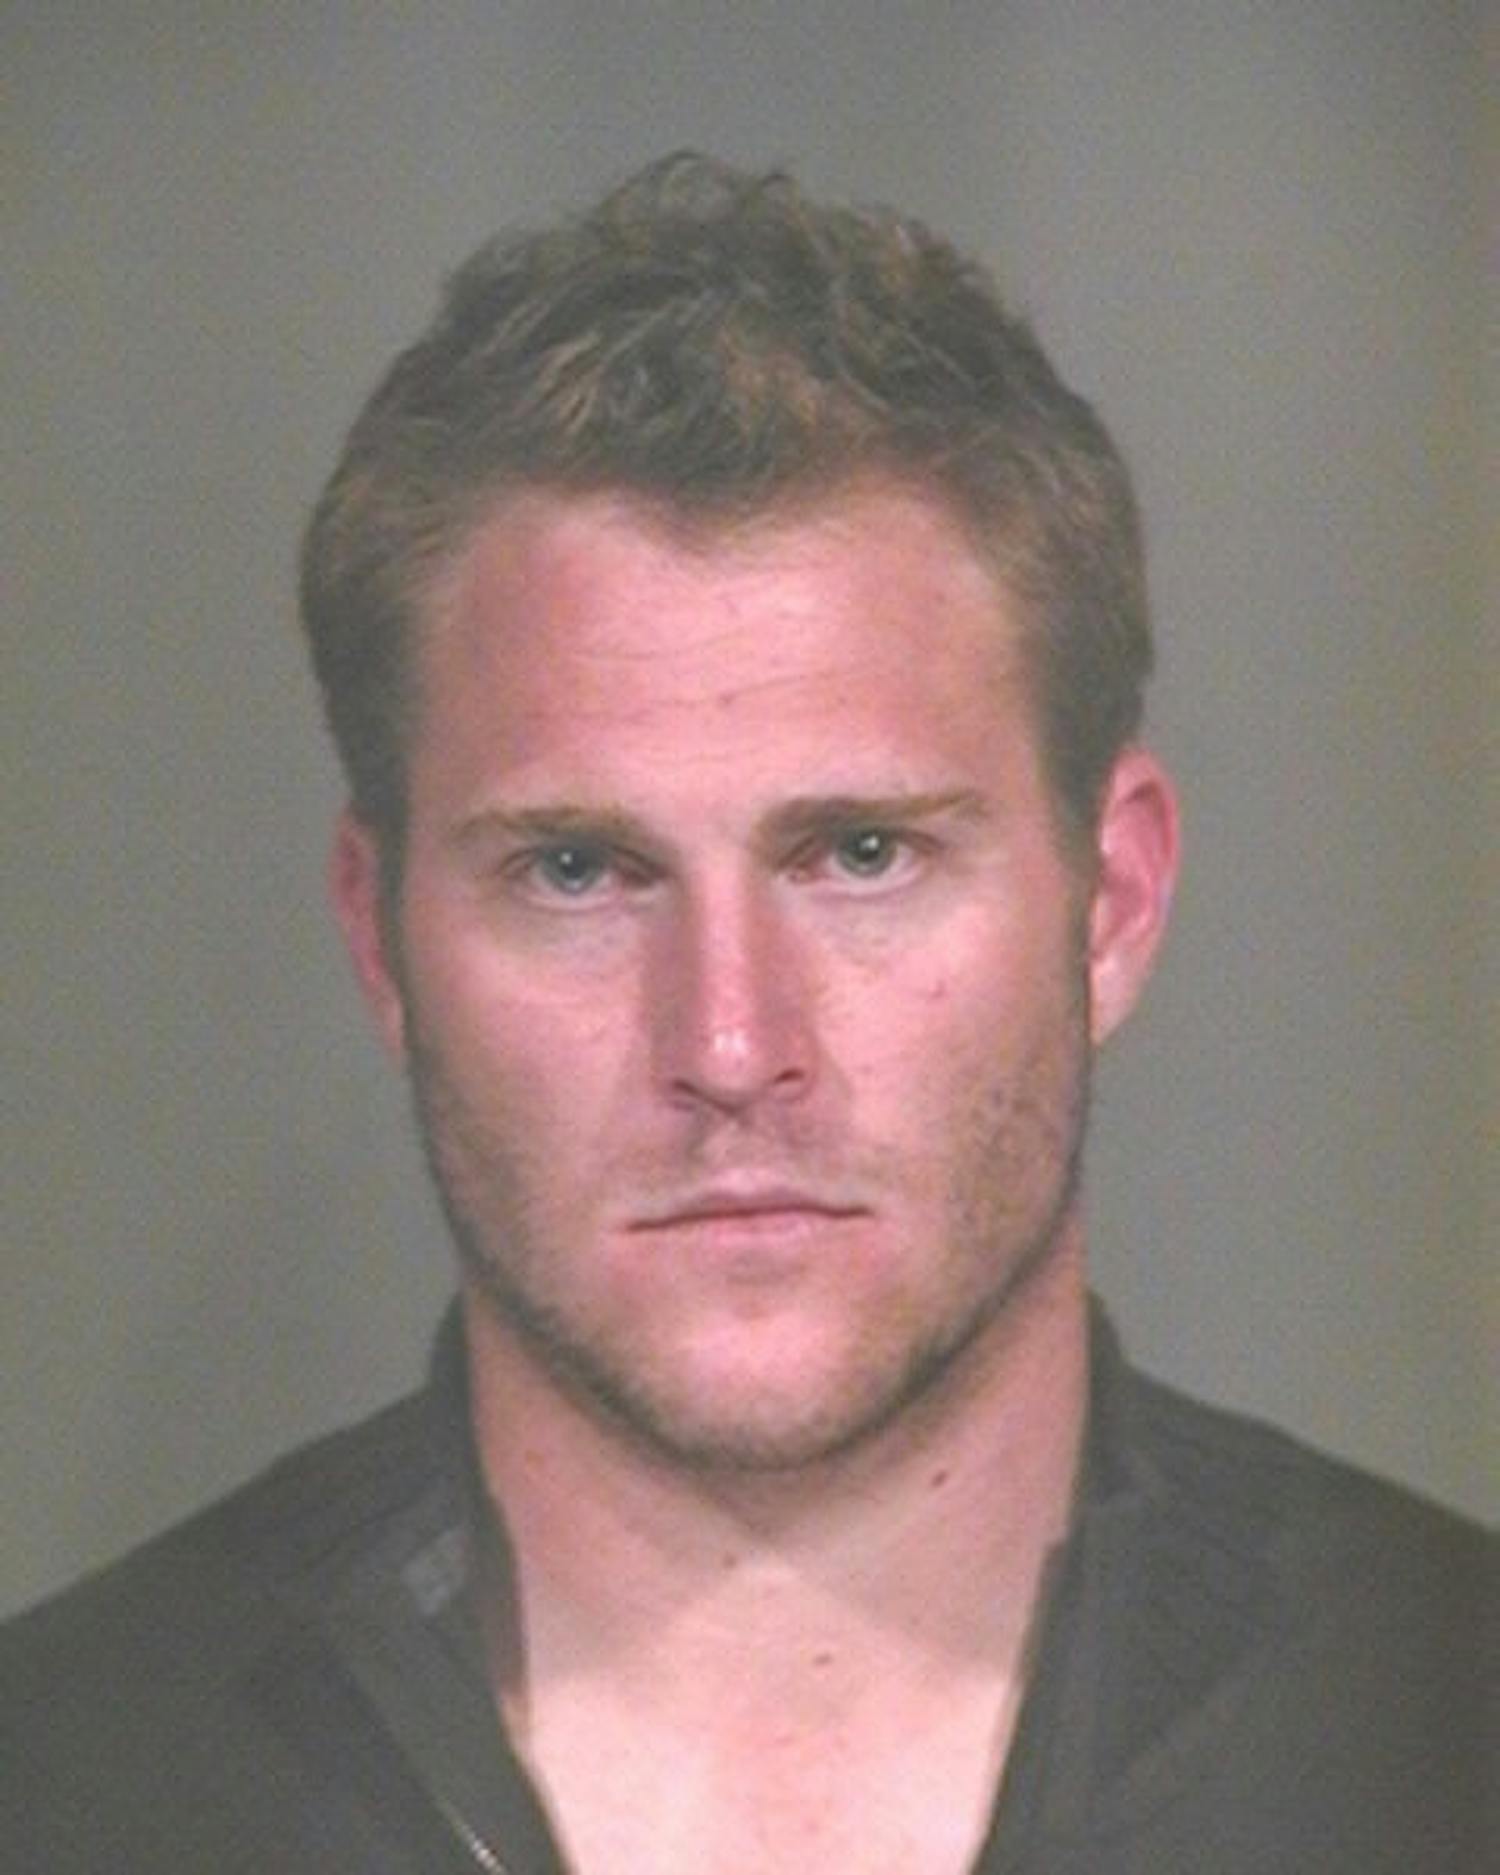 ASU senior punter Trevor Hankins was arrested Friday in Scottsdale on suspicion of DUI. (Courtesy of Scottsdale Police)